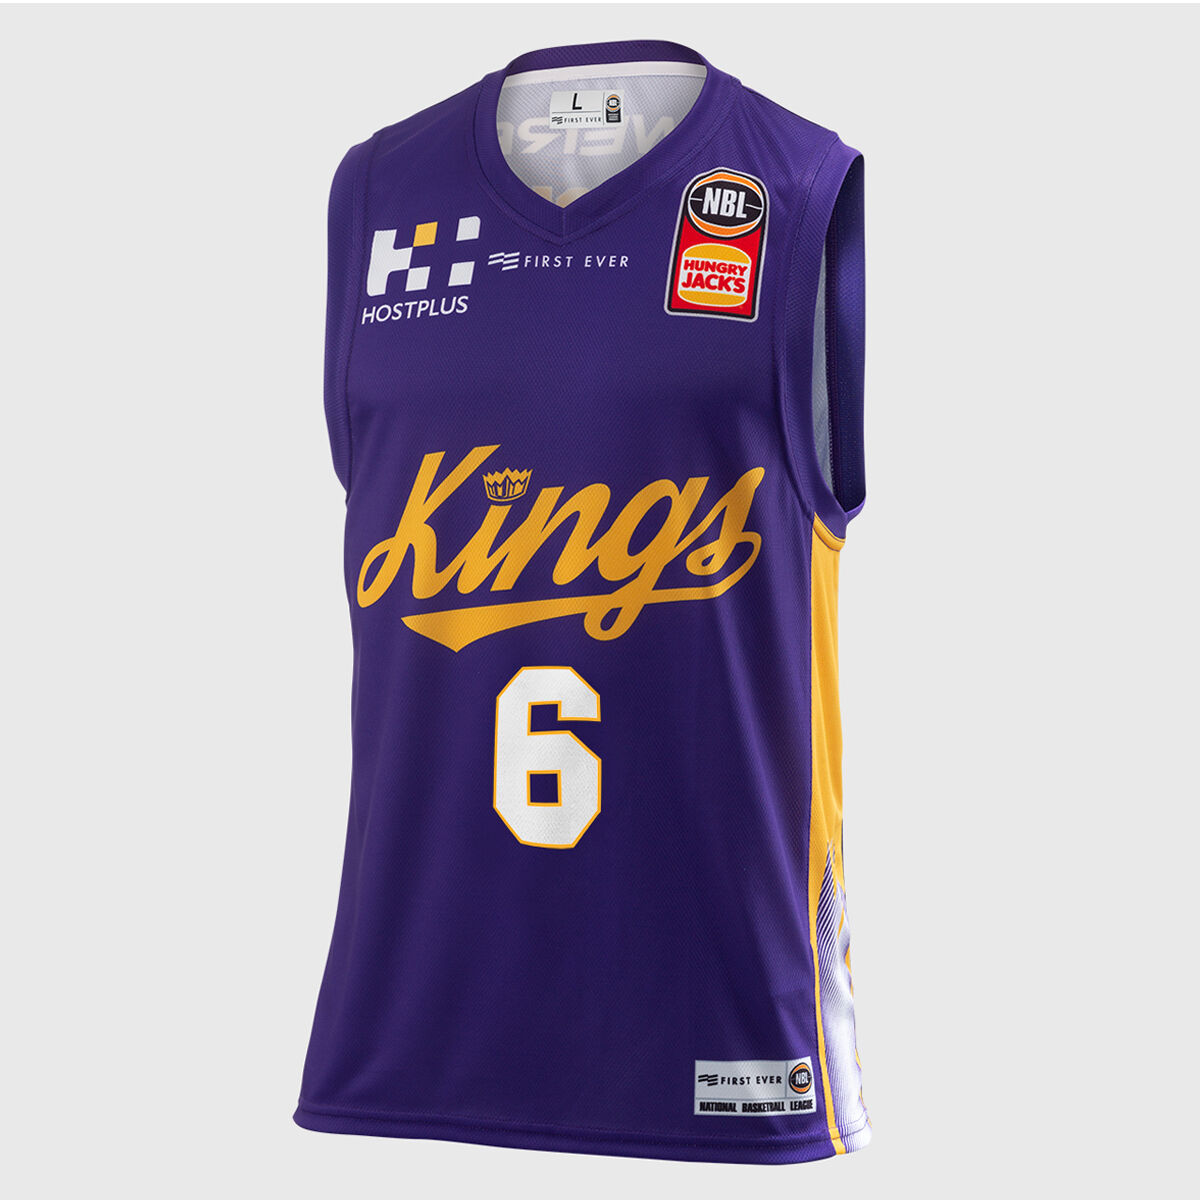 2018 kings jersey